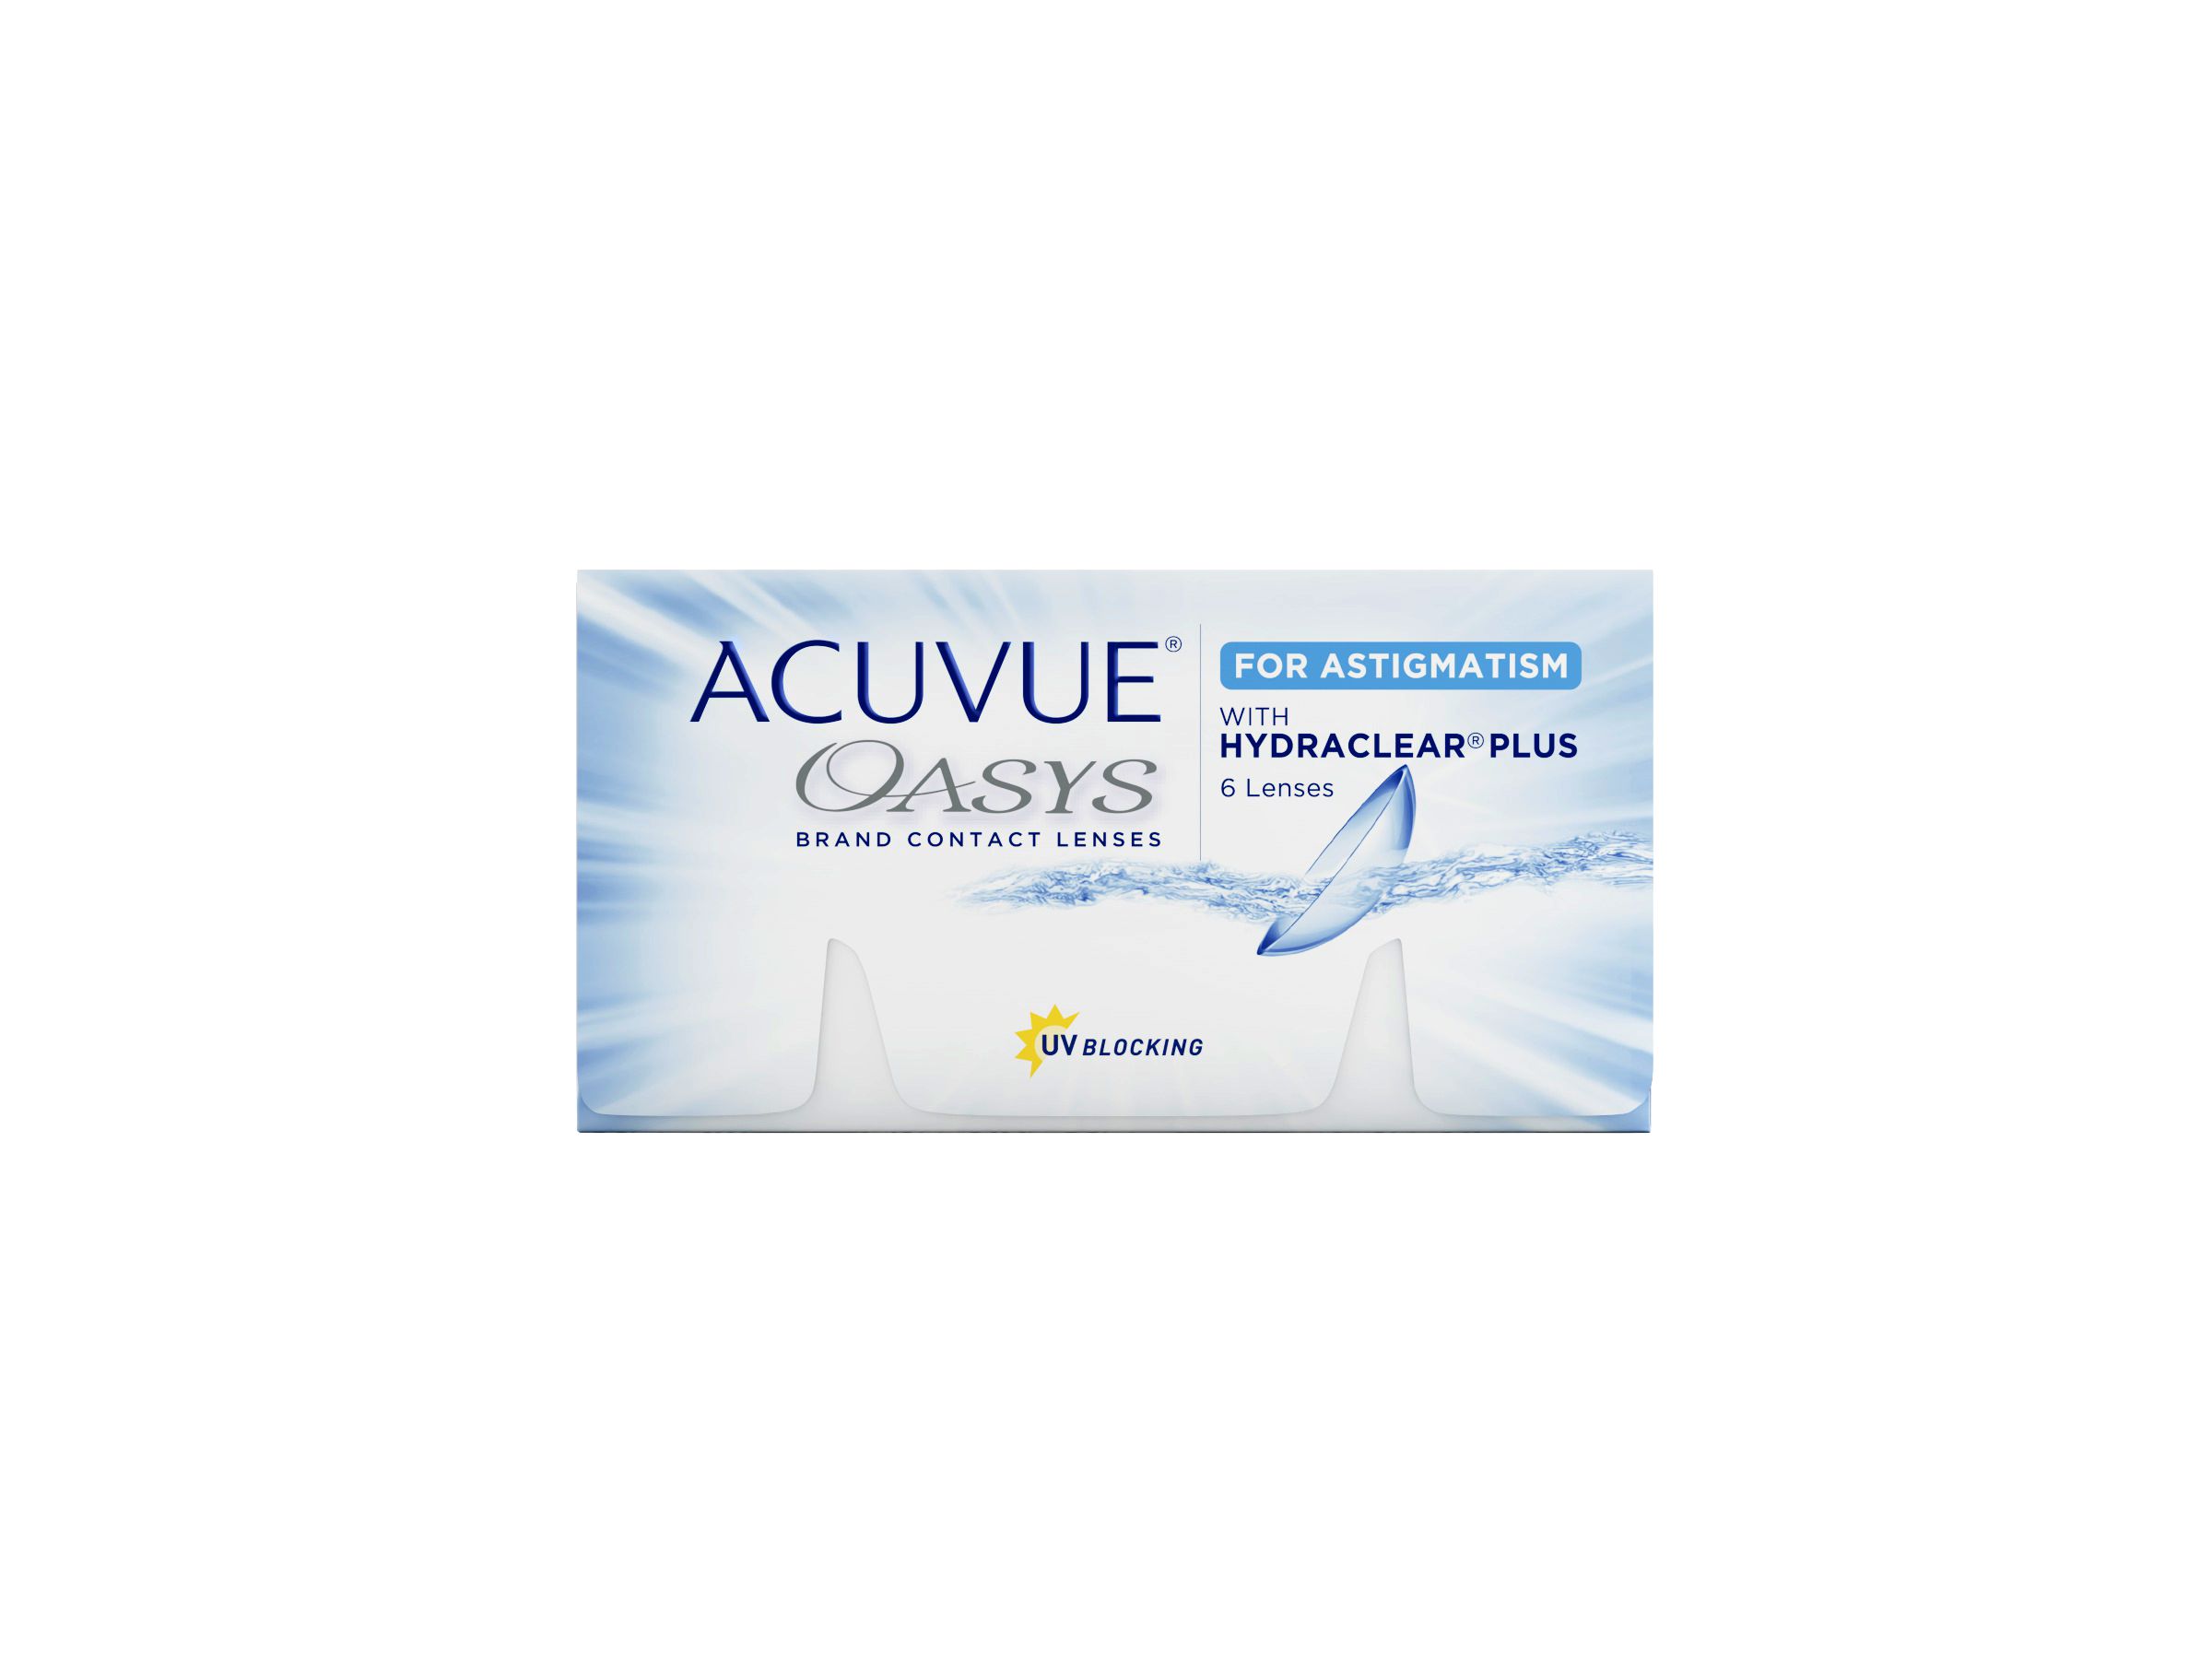 Lentile de contact ACUVUE® OASYS bilunare pentru astigmatism cu HYDRACLEAR